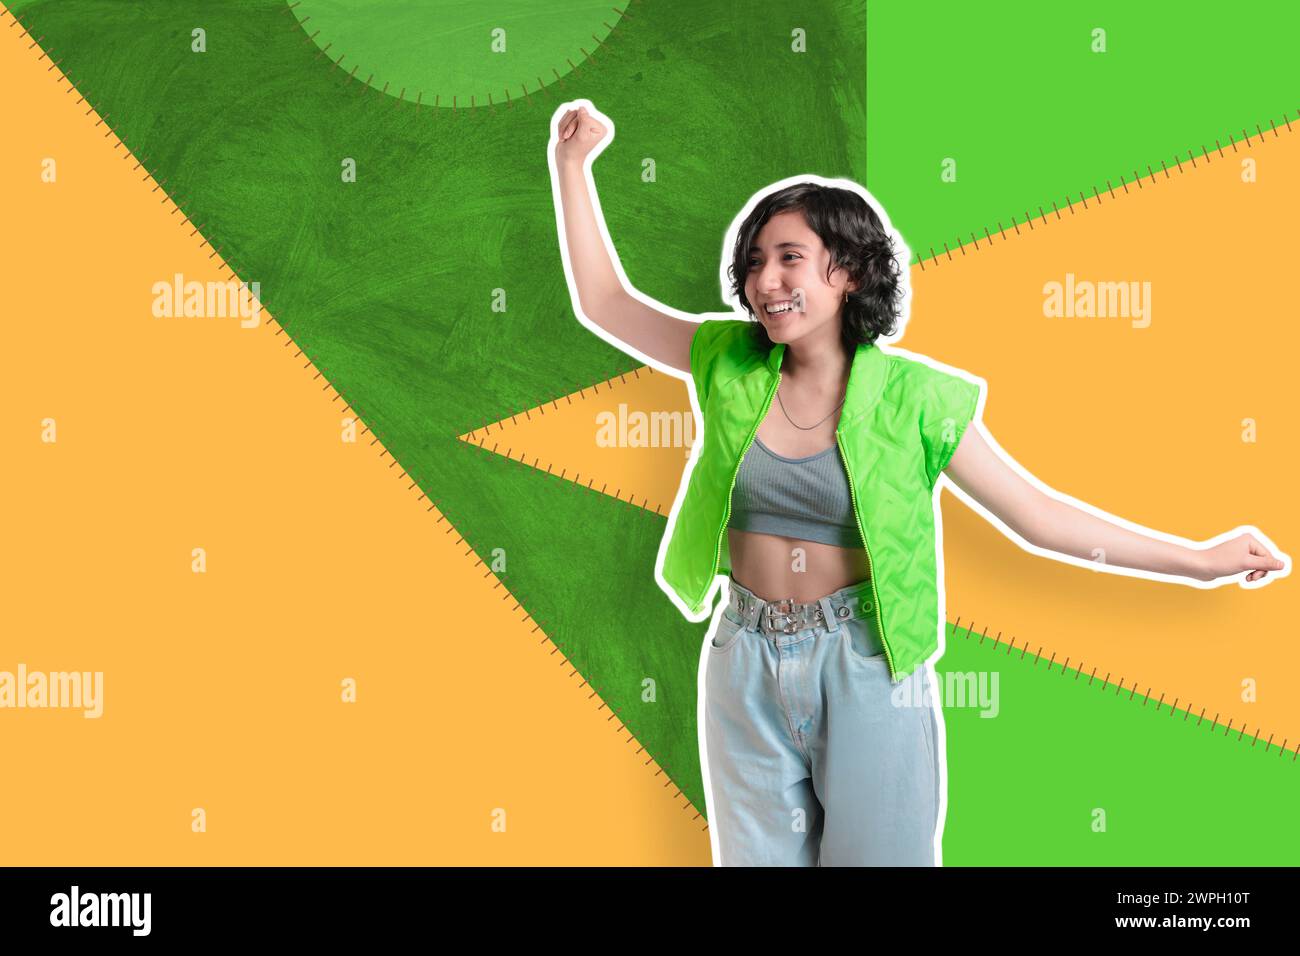 Foto creativa, collage, chica joven en un fondo colorido hace expresiones, ella está bailando muy feliz, banner para las redes sociales Foto de stock